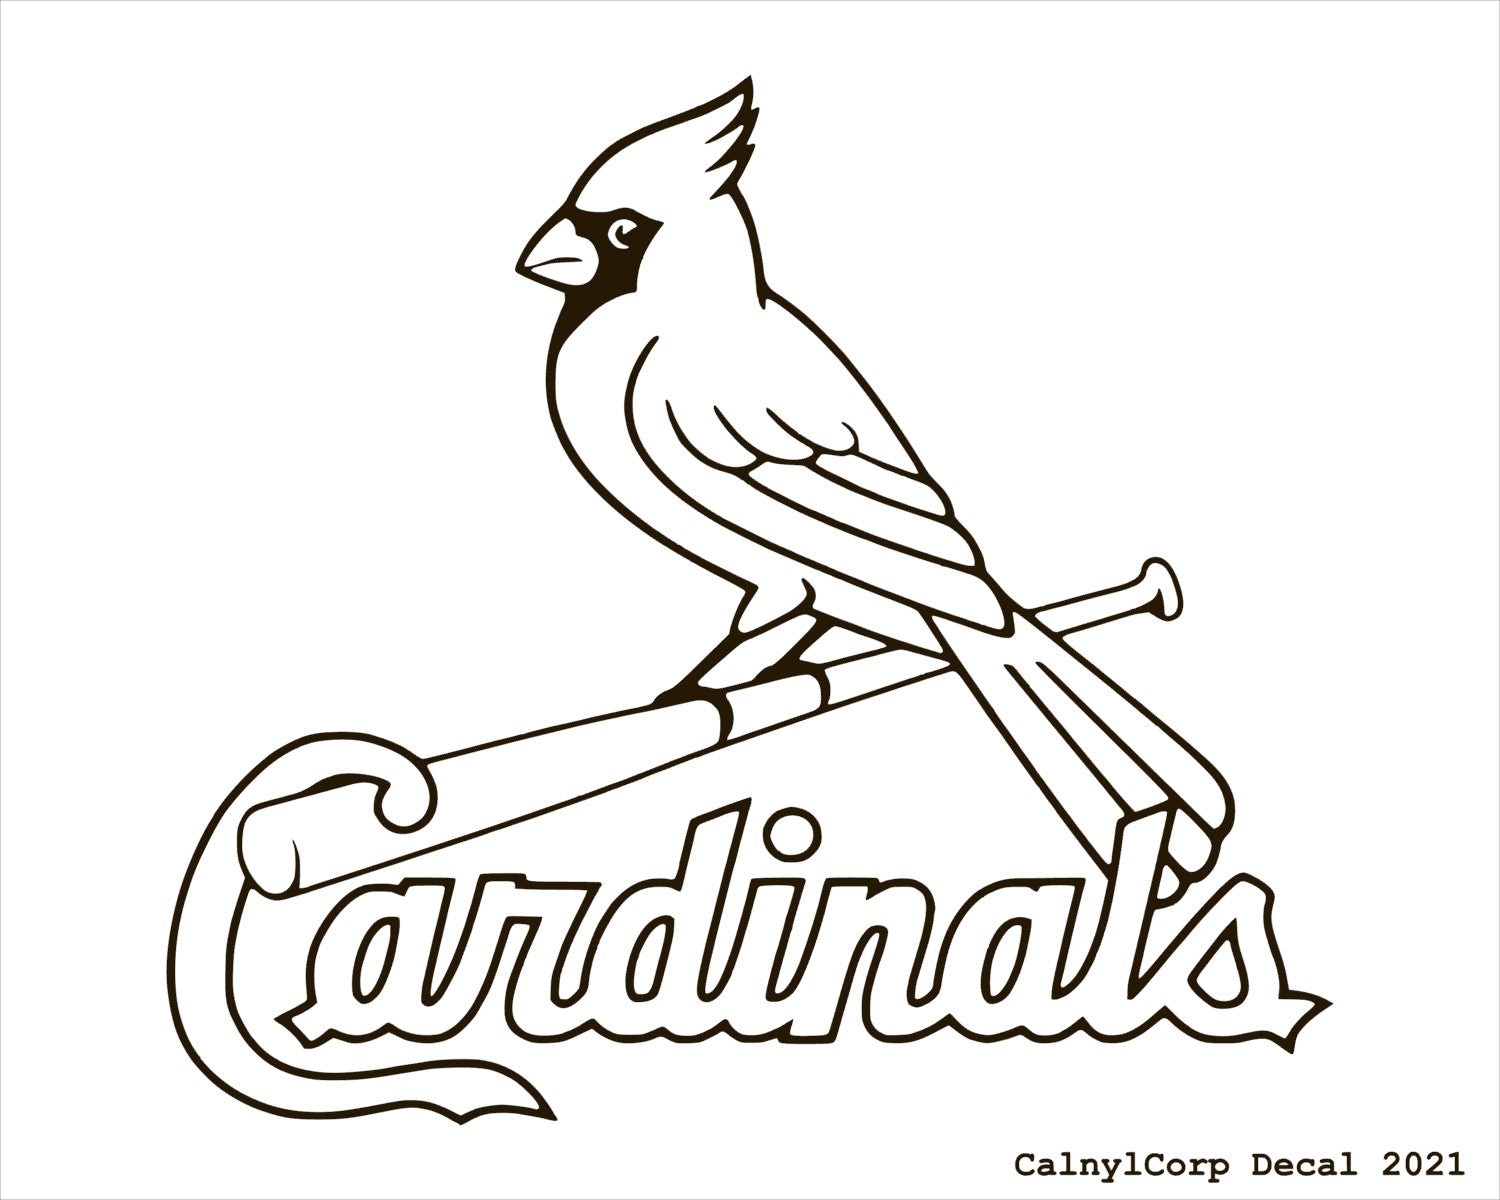 St louis cardinals vinyl sticker decals